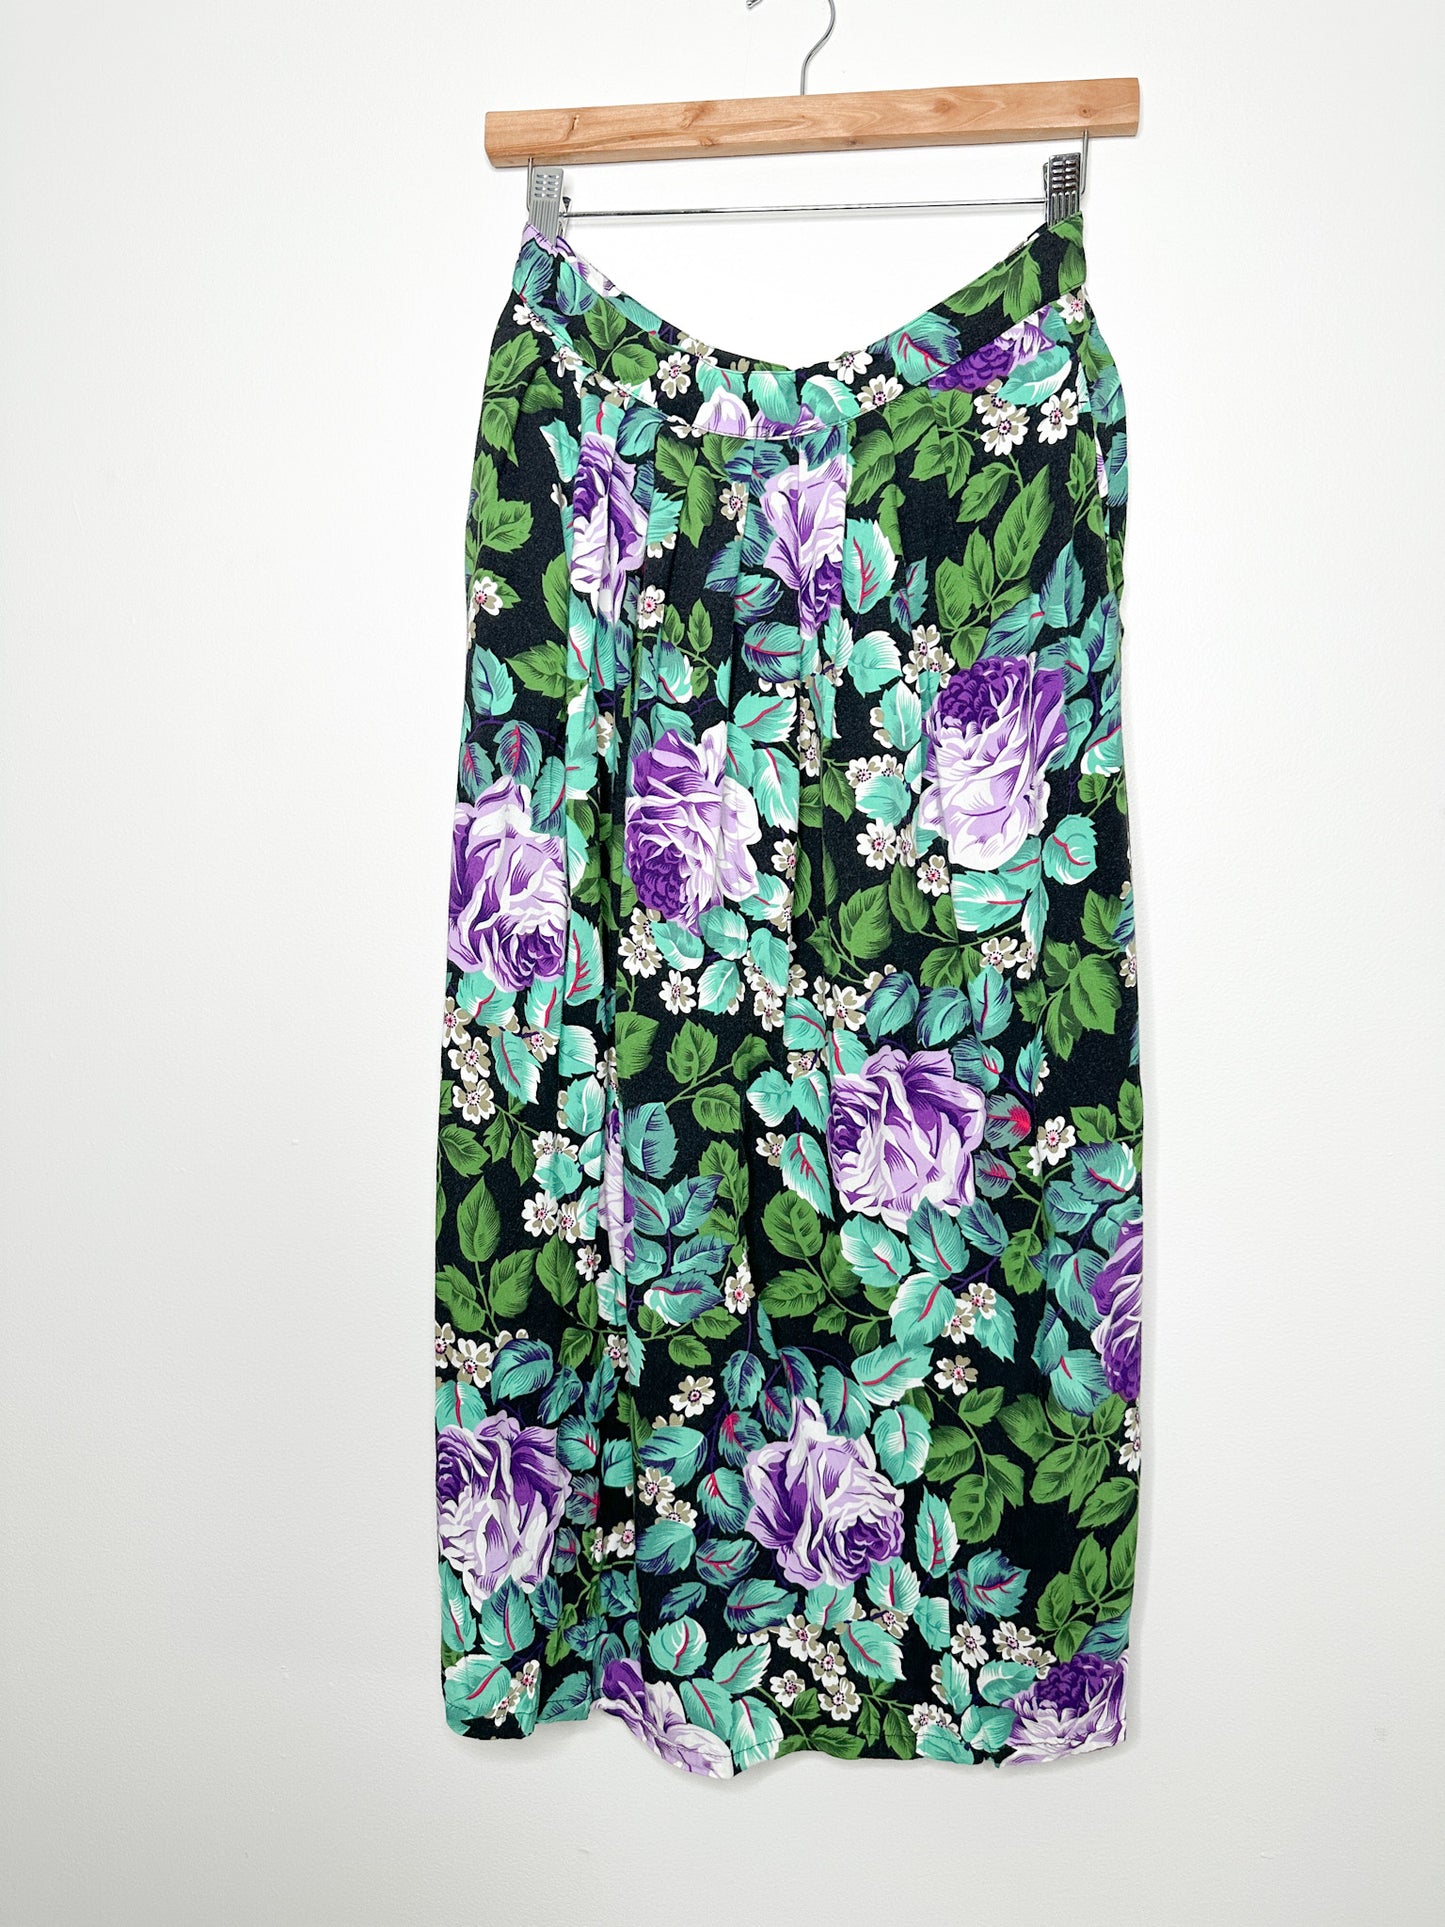 Vintage Non-Stop ALine Floral Skirt Size 11| Vintag Floral Skirt | Made in Korea